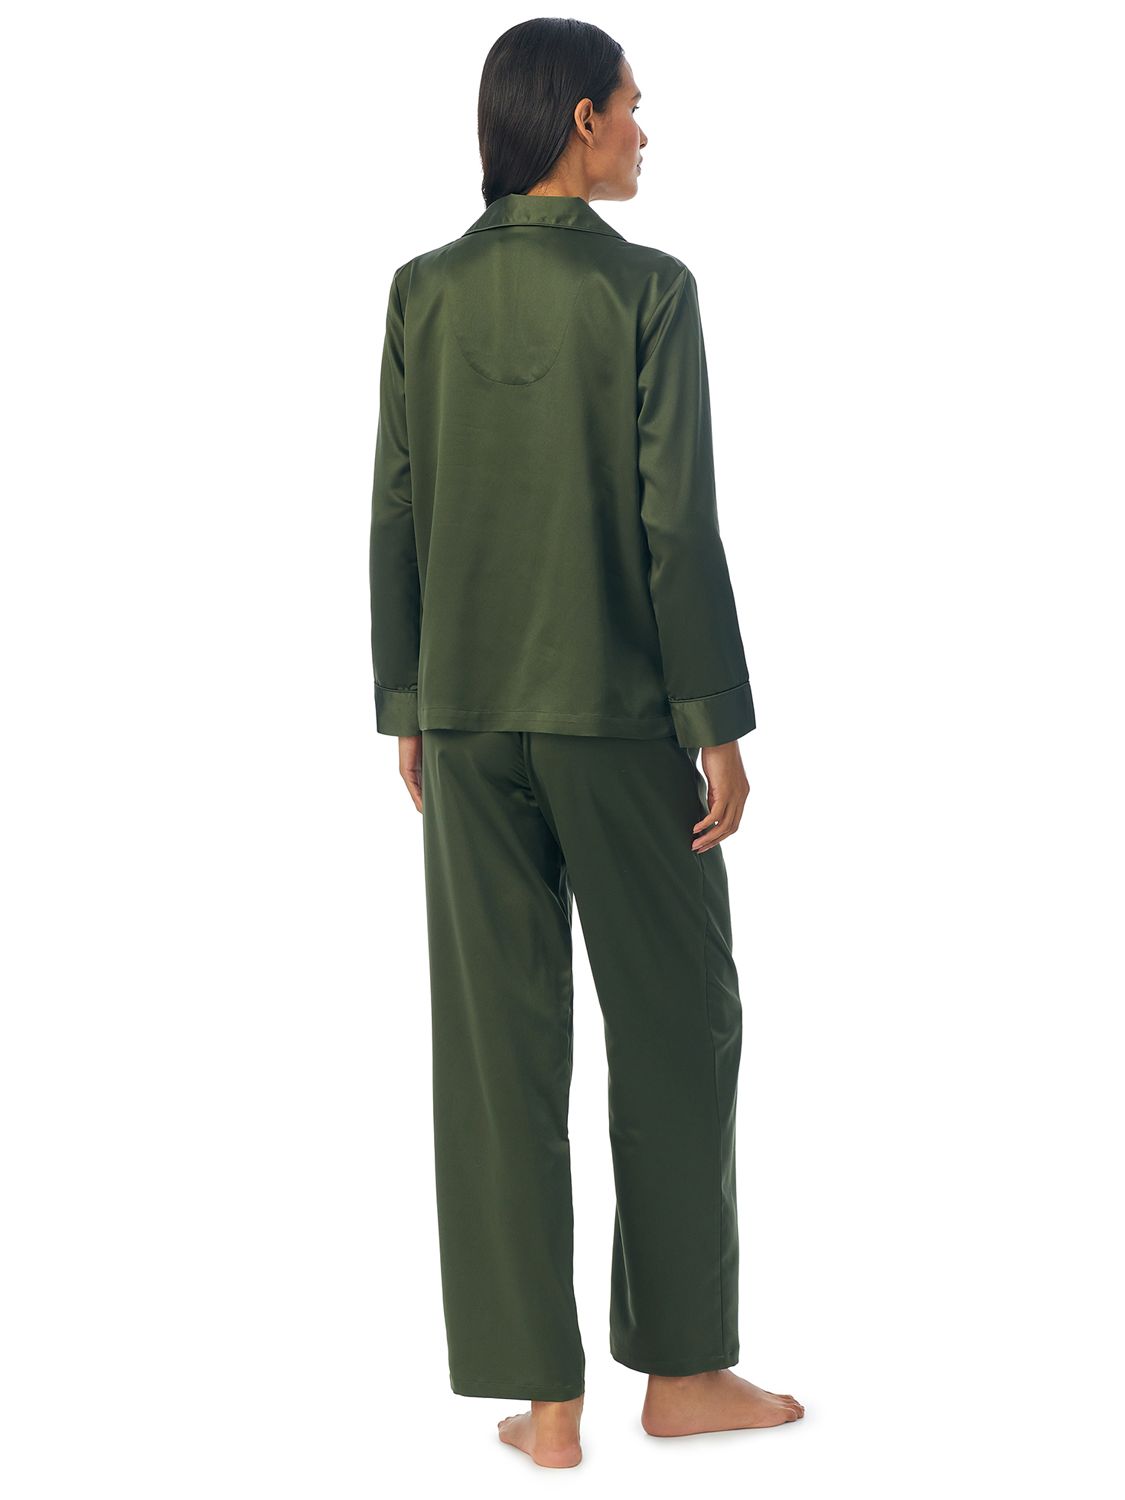 Lauren Ralph Lauren Classic Long Sleeve Pyjama Set, Navy at John